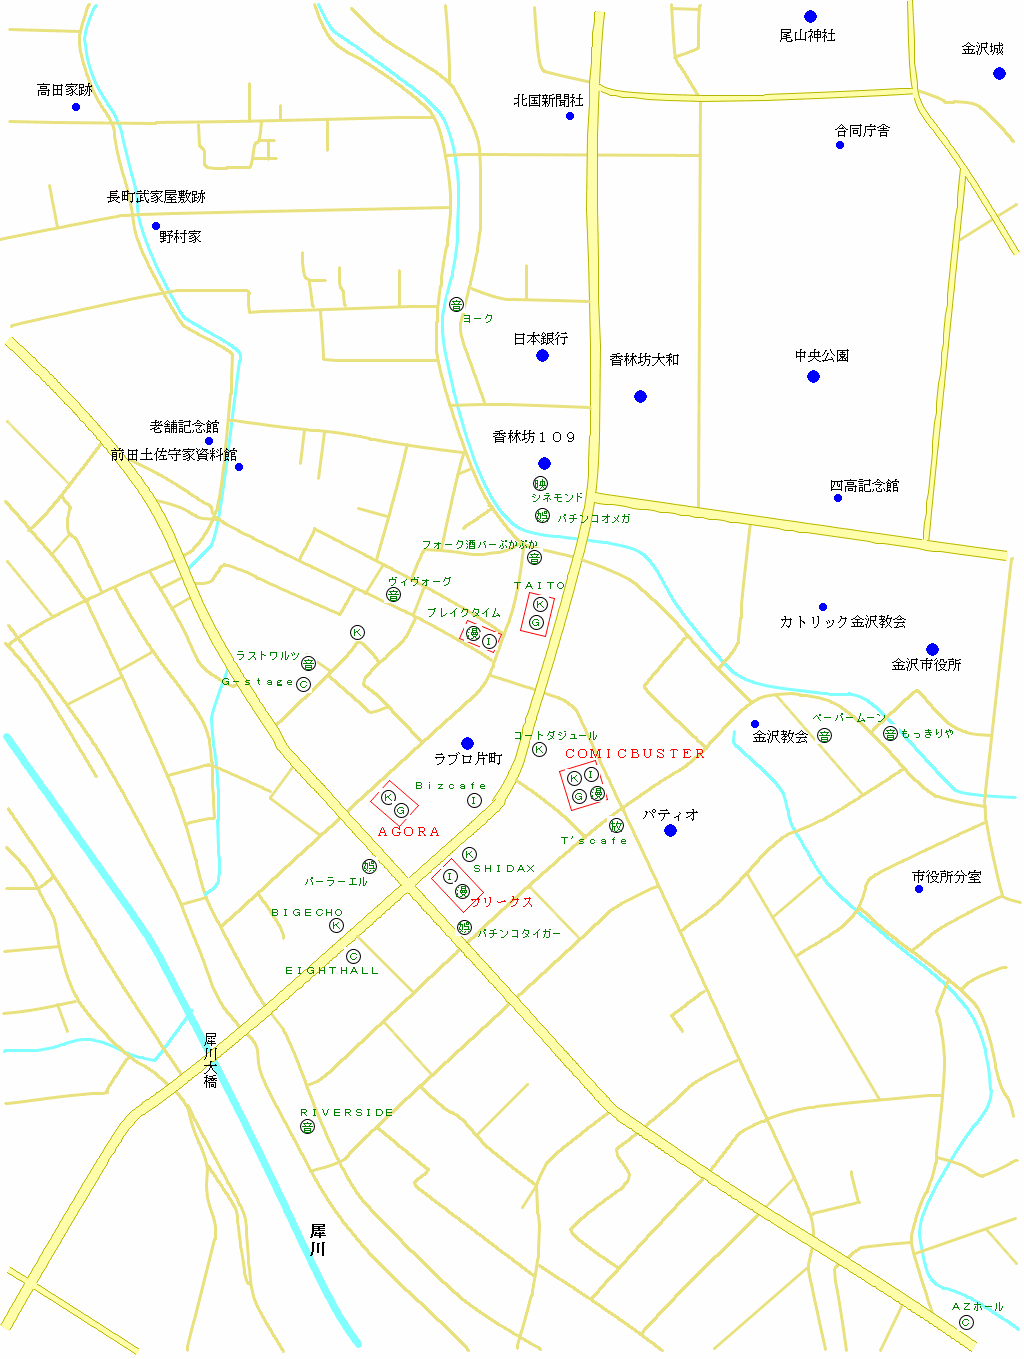 片町・香林坊の遊びの施設の地図